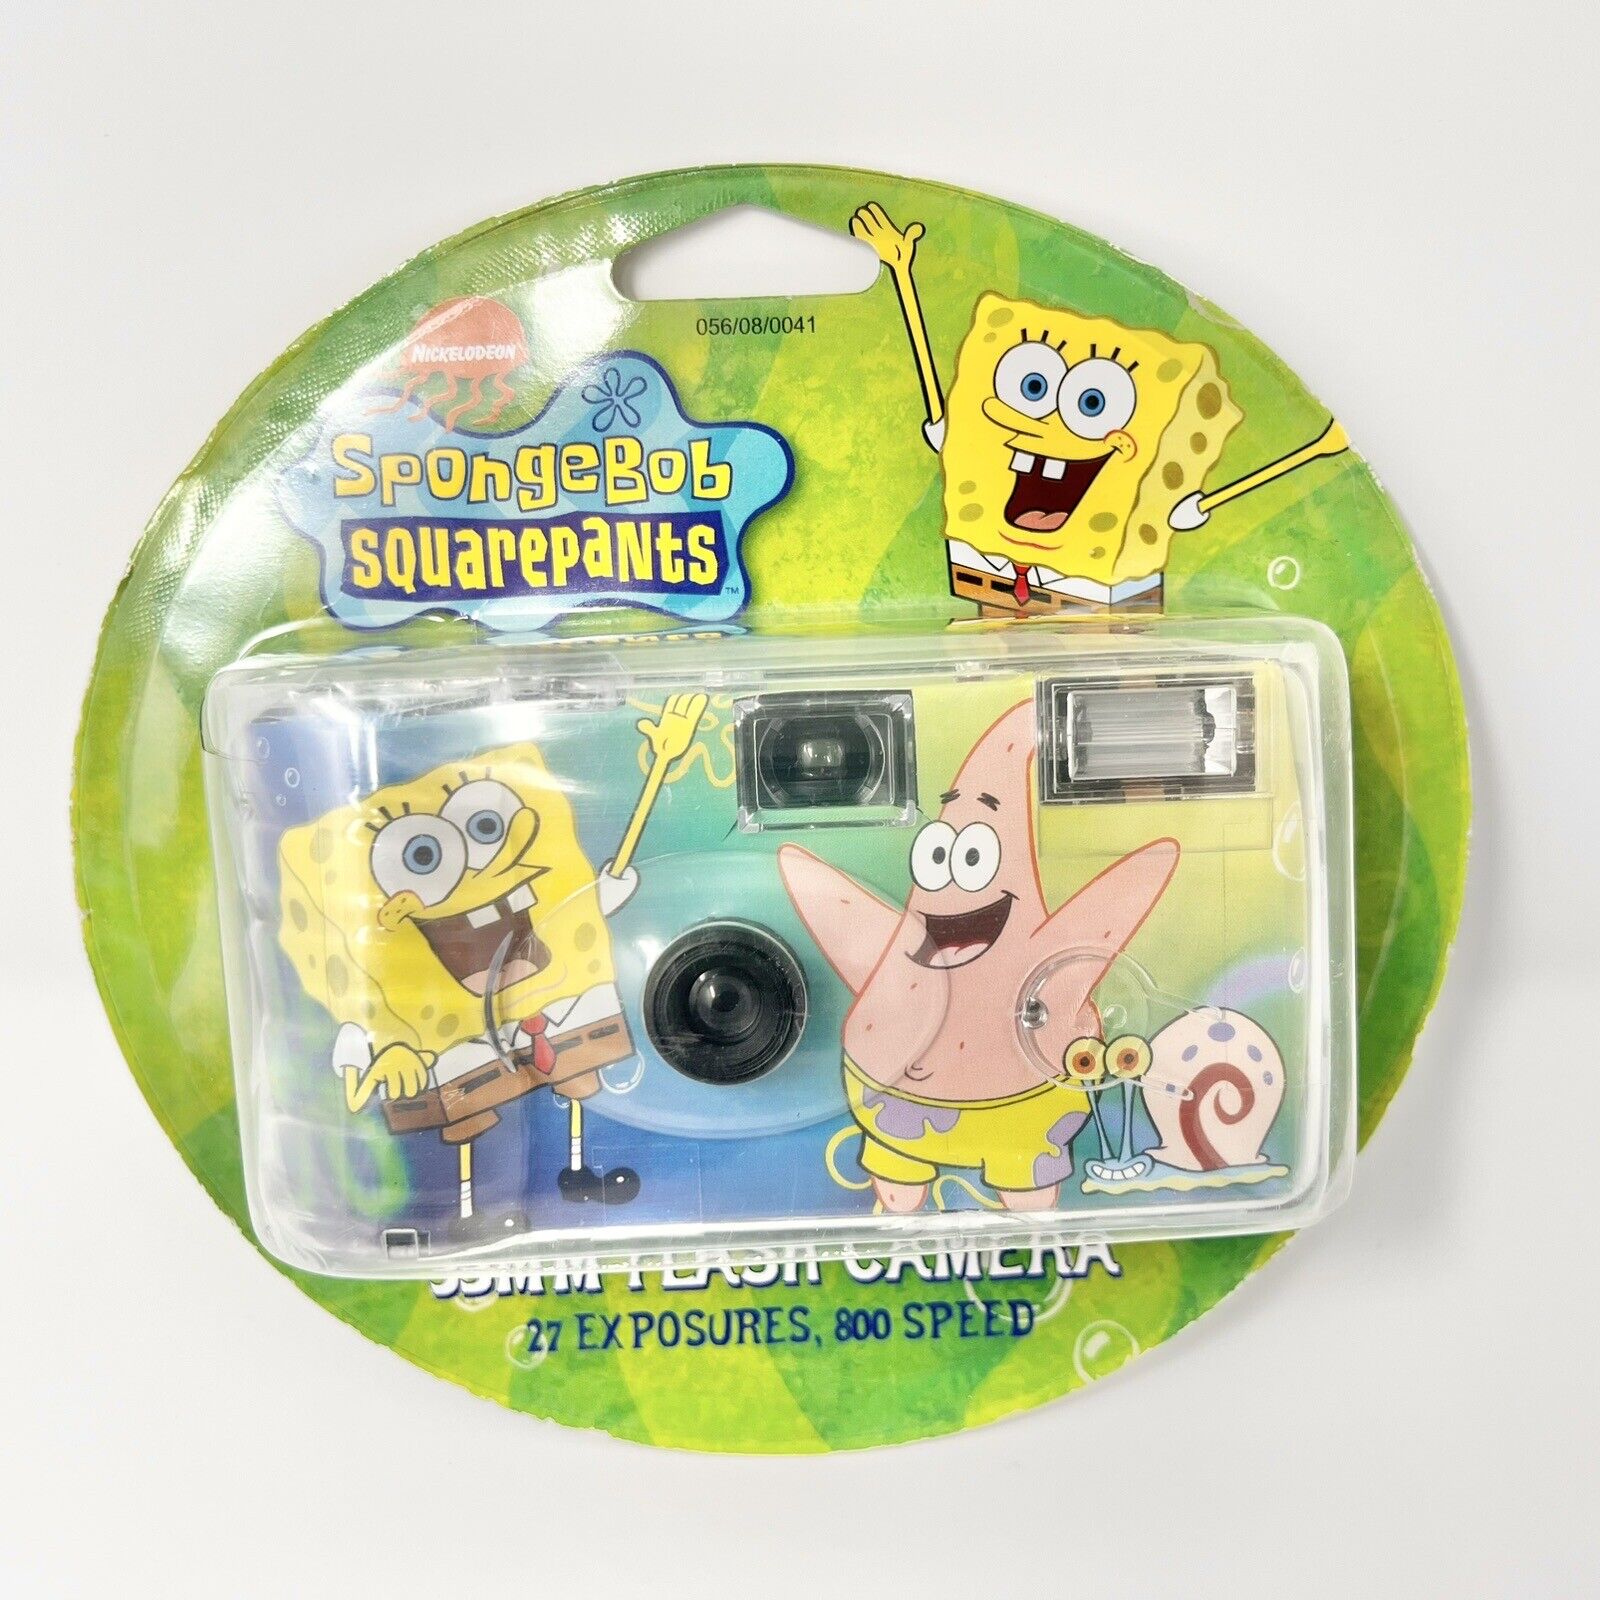 Nickelodeon SpongeBob SquarePants 35MM Flash Camera Expired January 2008 New